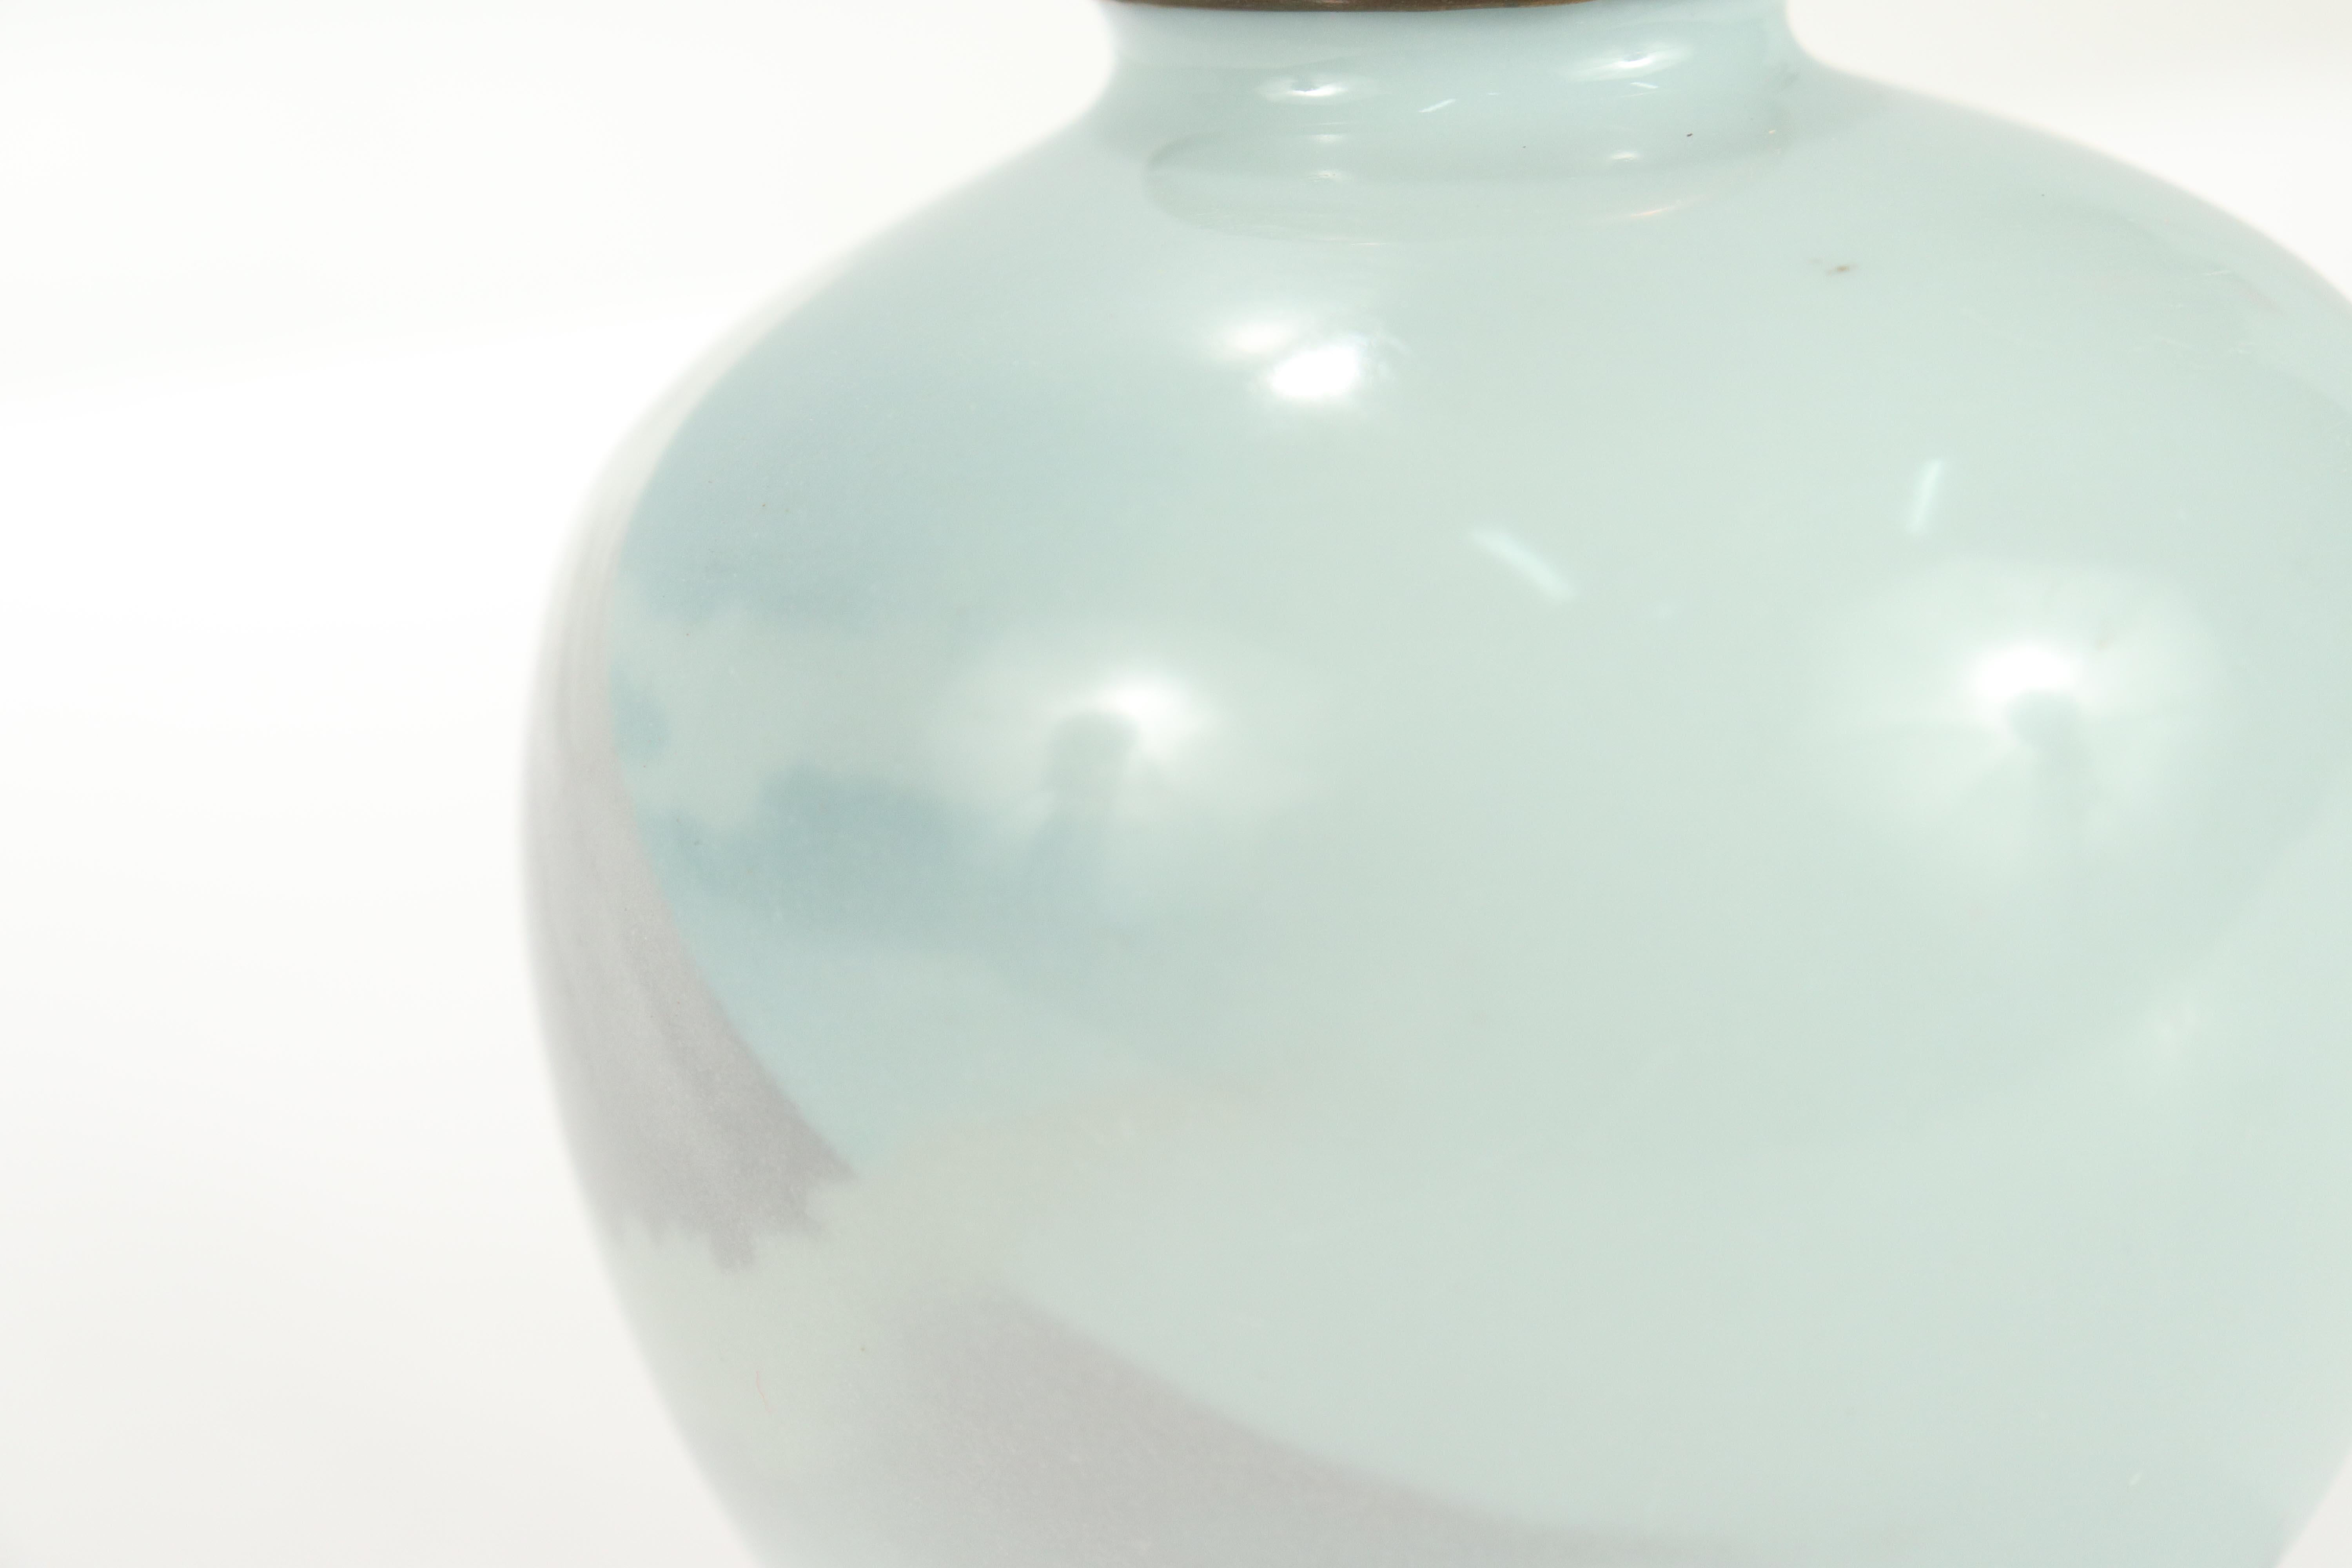 Old or Antique Diminutive Japanese Wireless Cloisonne Enamel Vase of Mt Fuji For Sale 1